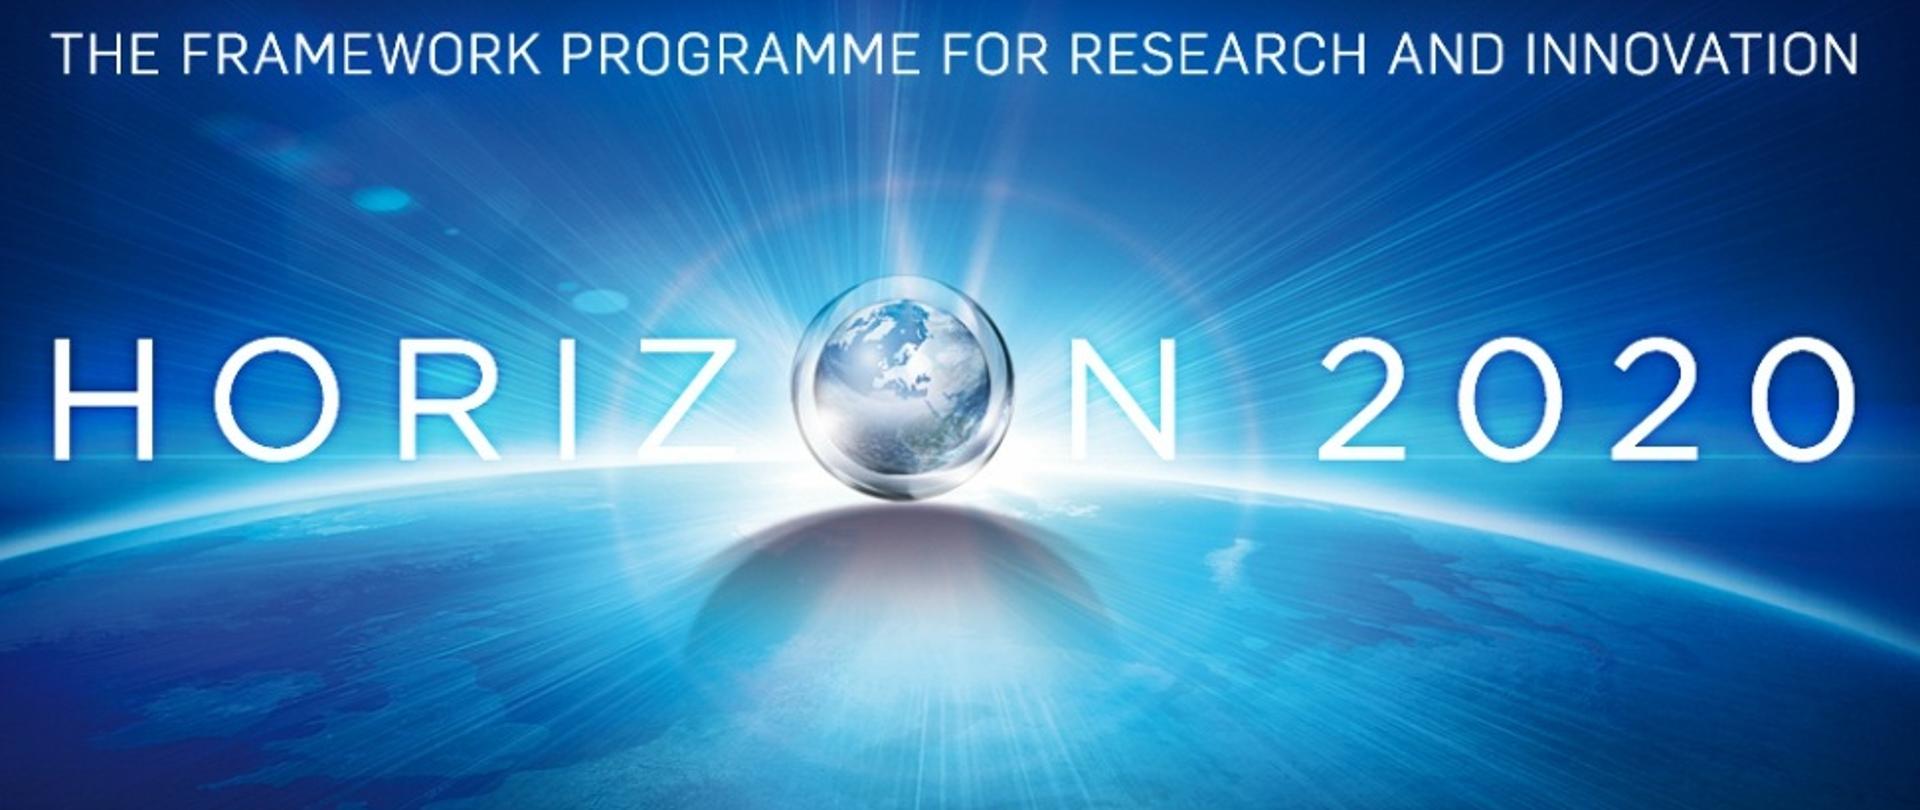 Horizon 2020 - napis i stylizowana kula ziemska na niebieskim tle